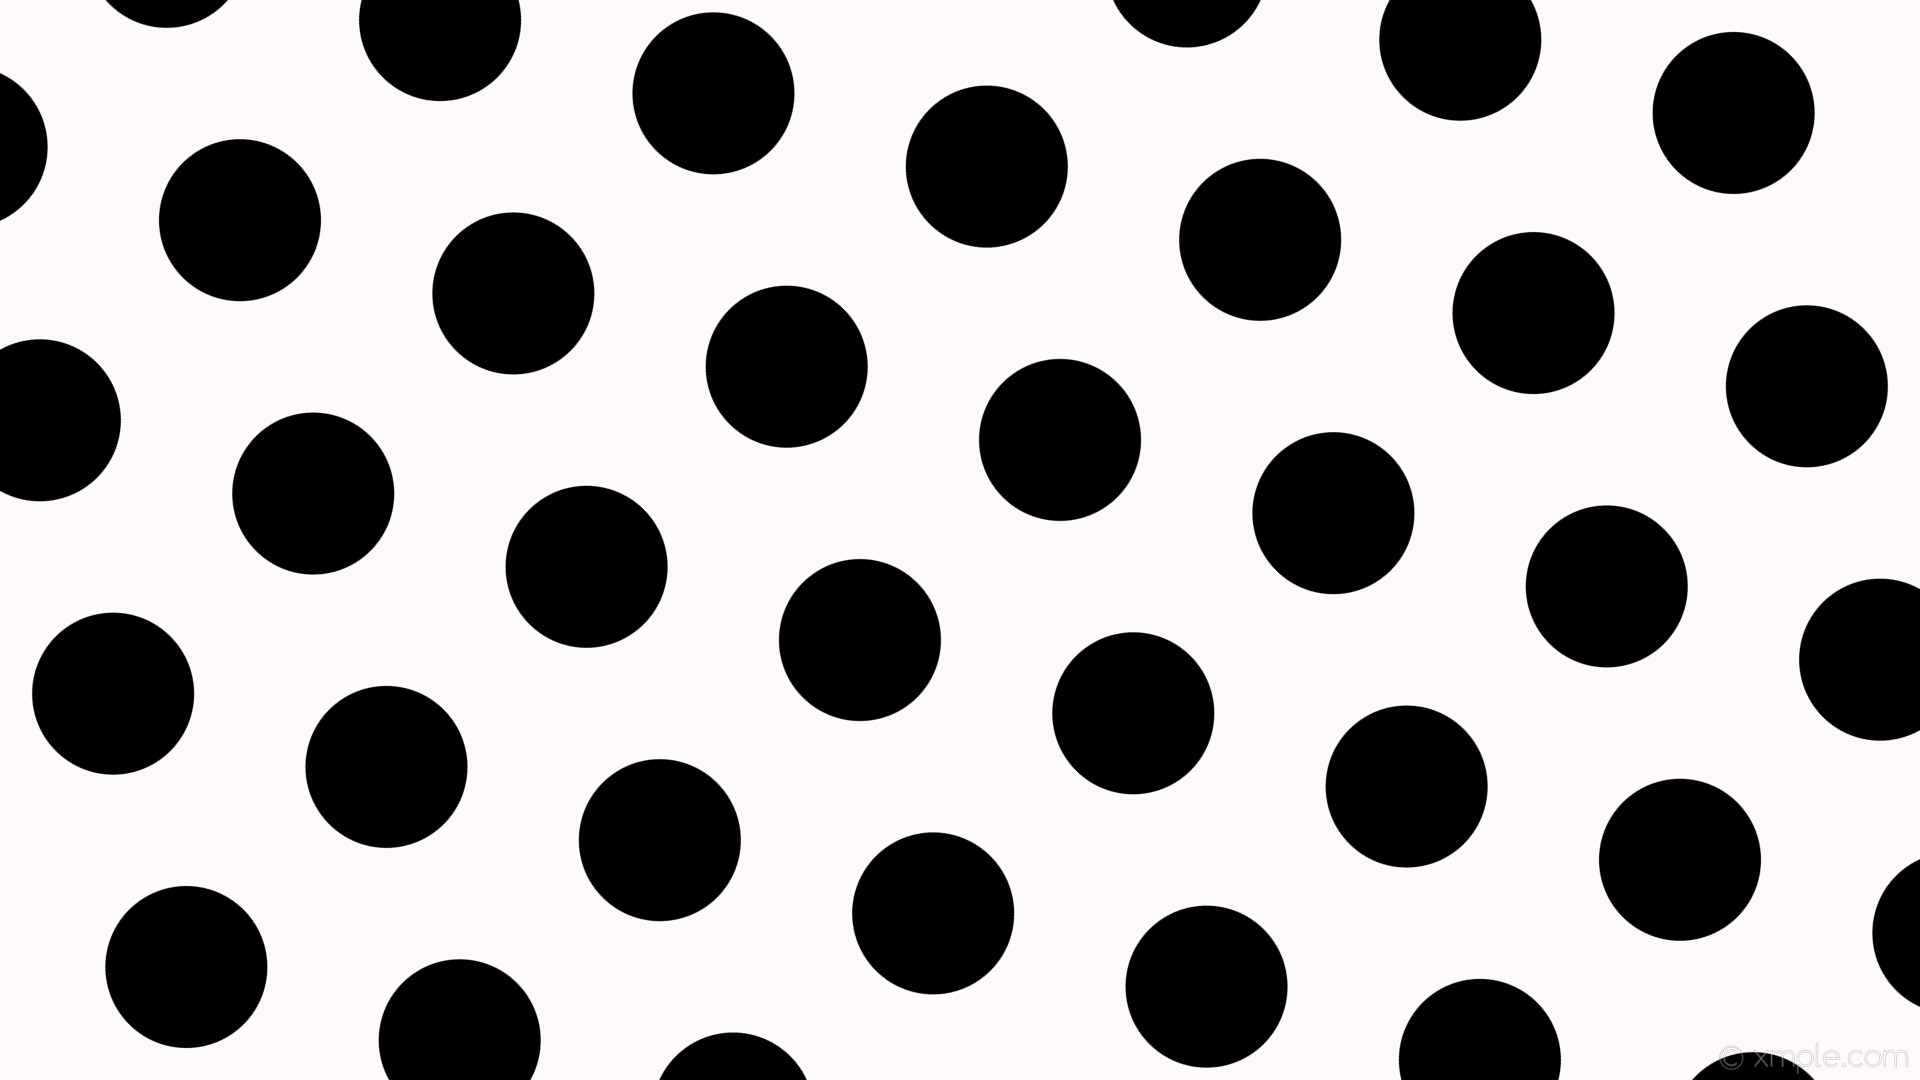 wallpaper hexagon polka dots black white snow #fffafa #000000 diagonal 45Â°  162px 283px